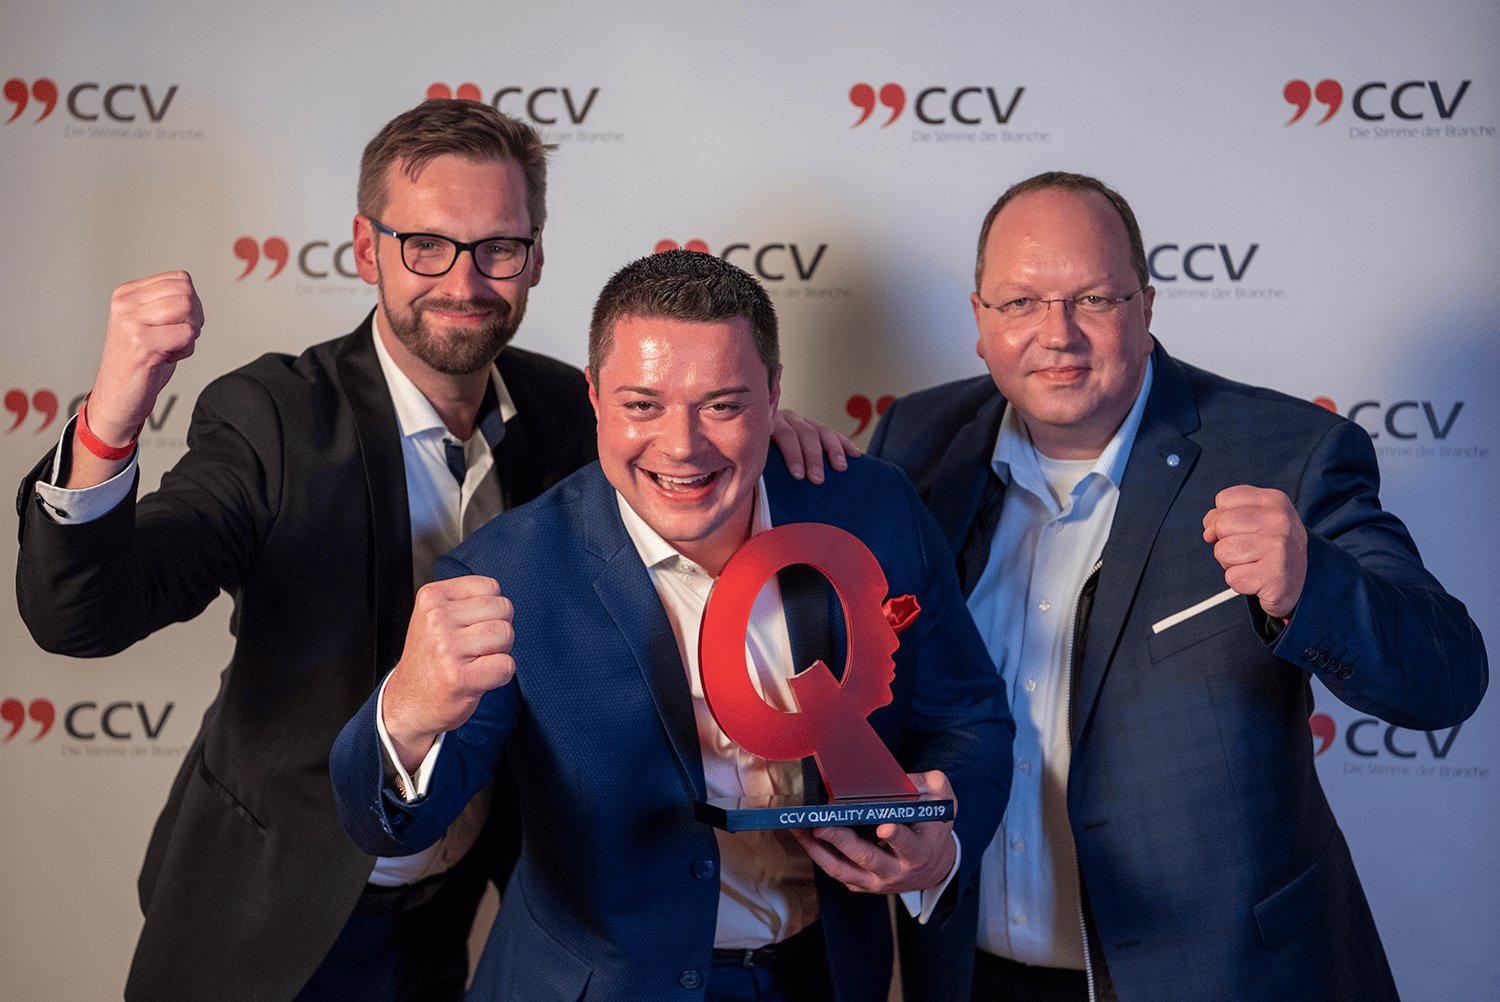 mobile.de und oneclick gewinnen CCV Quality Award 2019